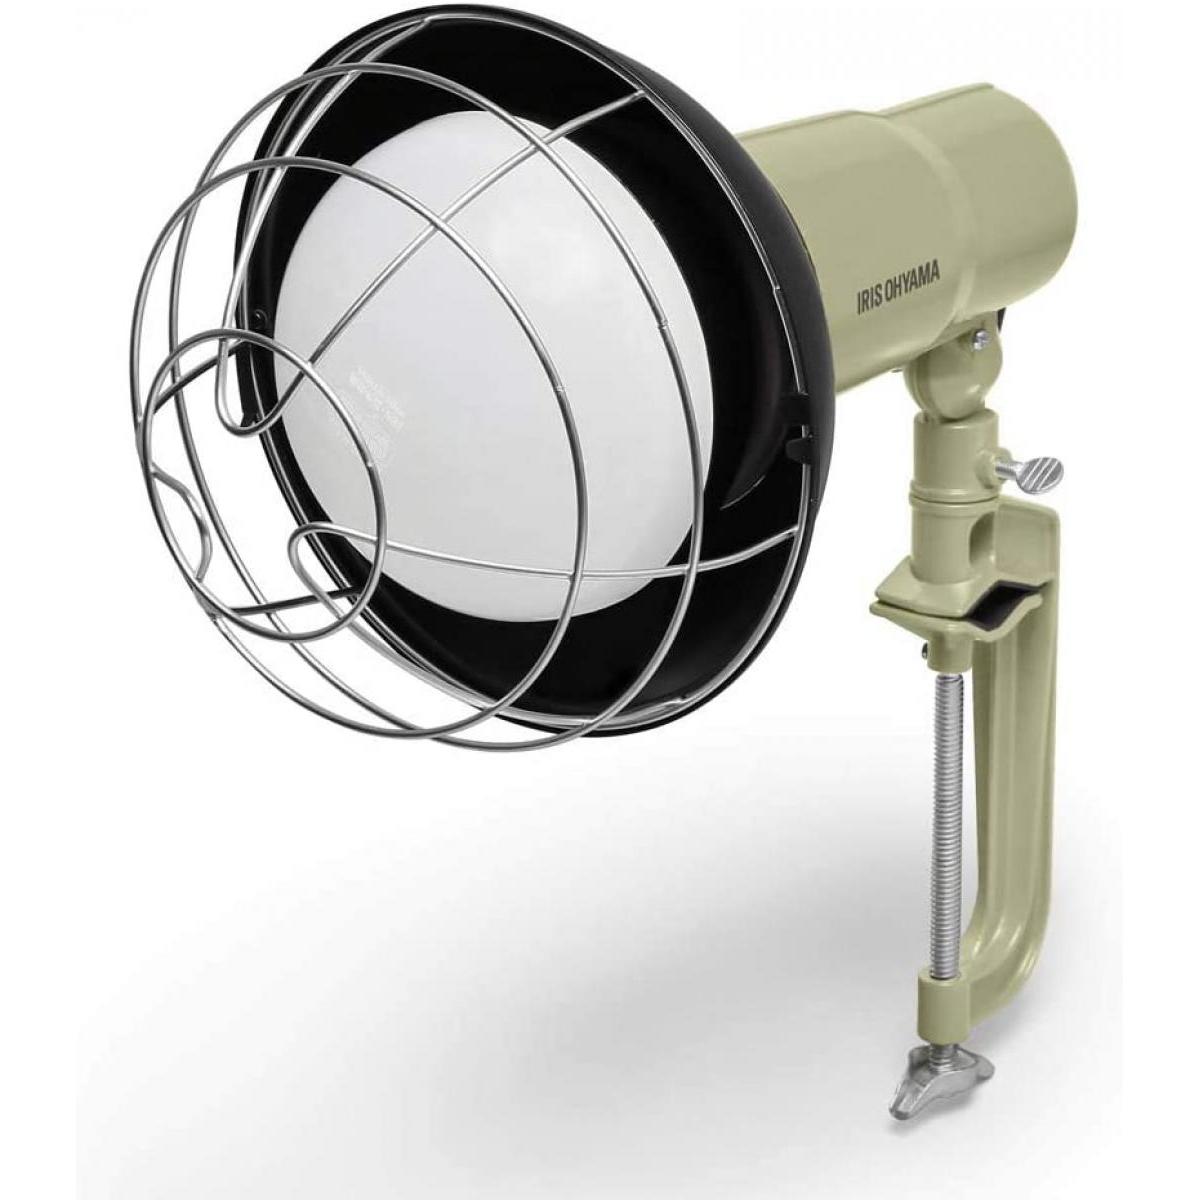 2021新入荷 アイリスオーヤマ LED ワークライト投光器 作業灯 置き型 べースライト 屋内専用 10000lm